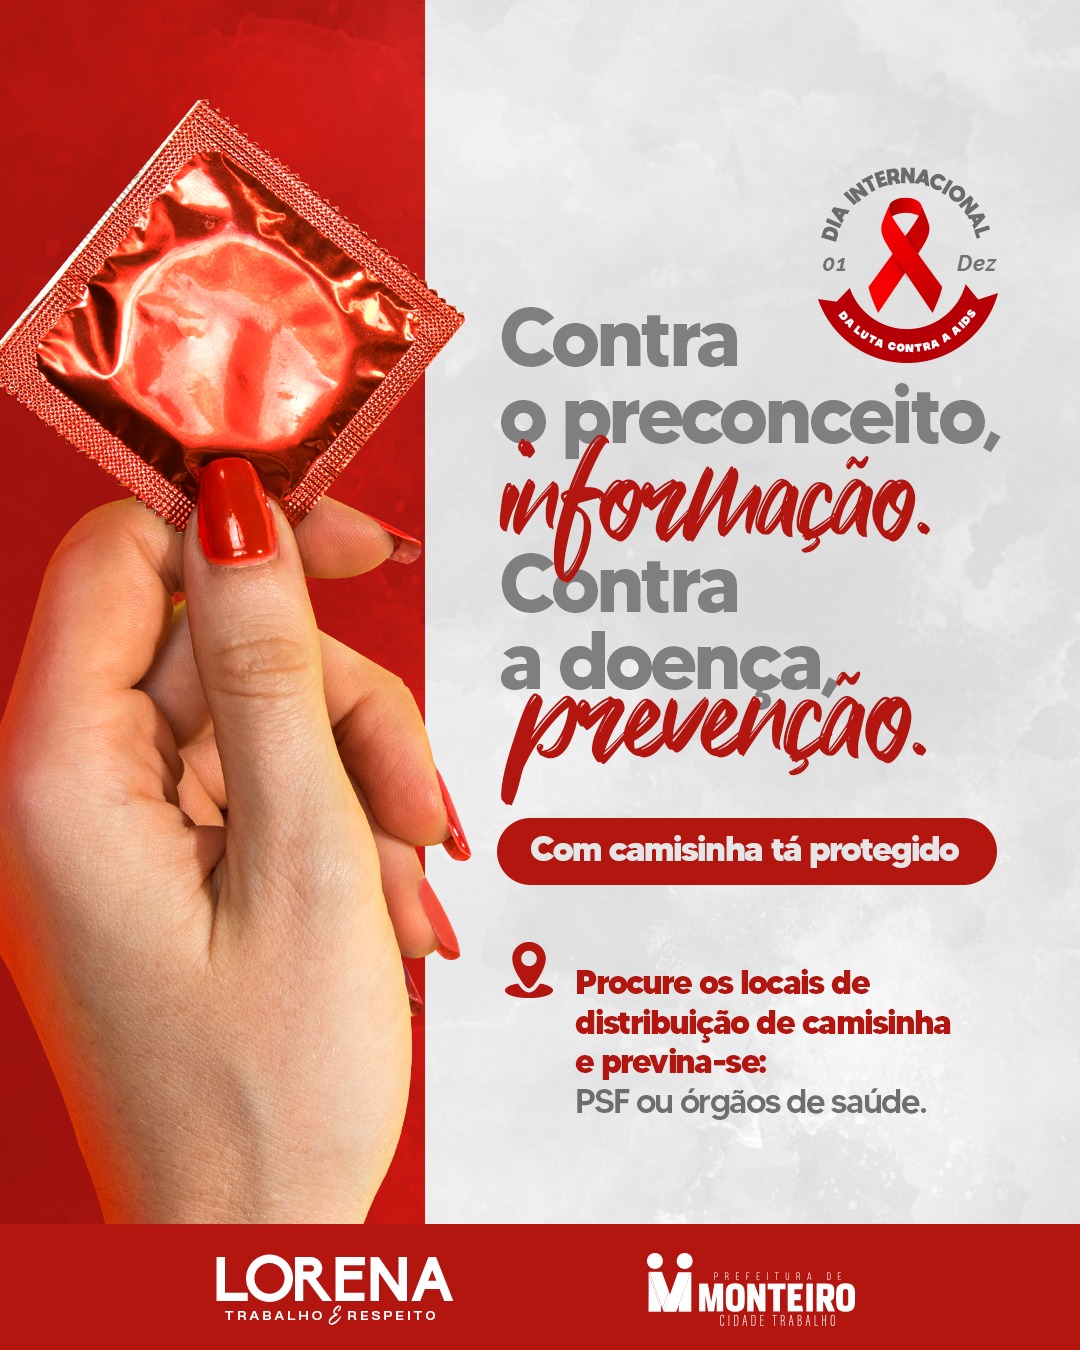 Dezembro Vermelho: Secretaria de Saúde proporciona atividades de prevenção ao HIV/AIDS e outras infecções sexualmente transmissíveis